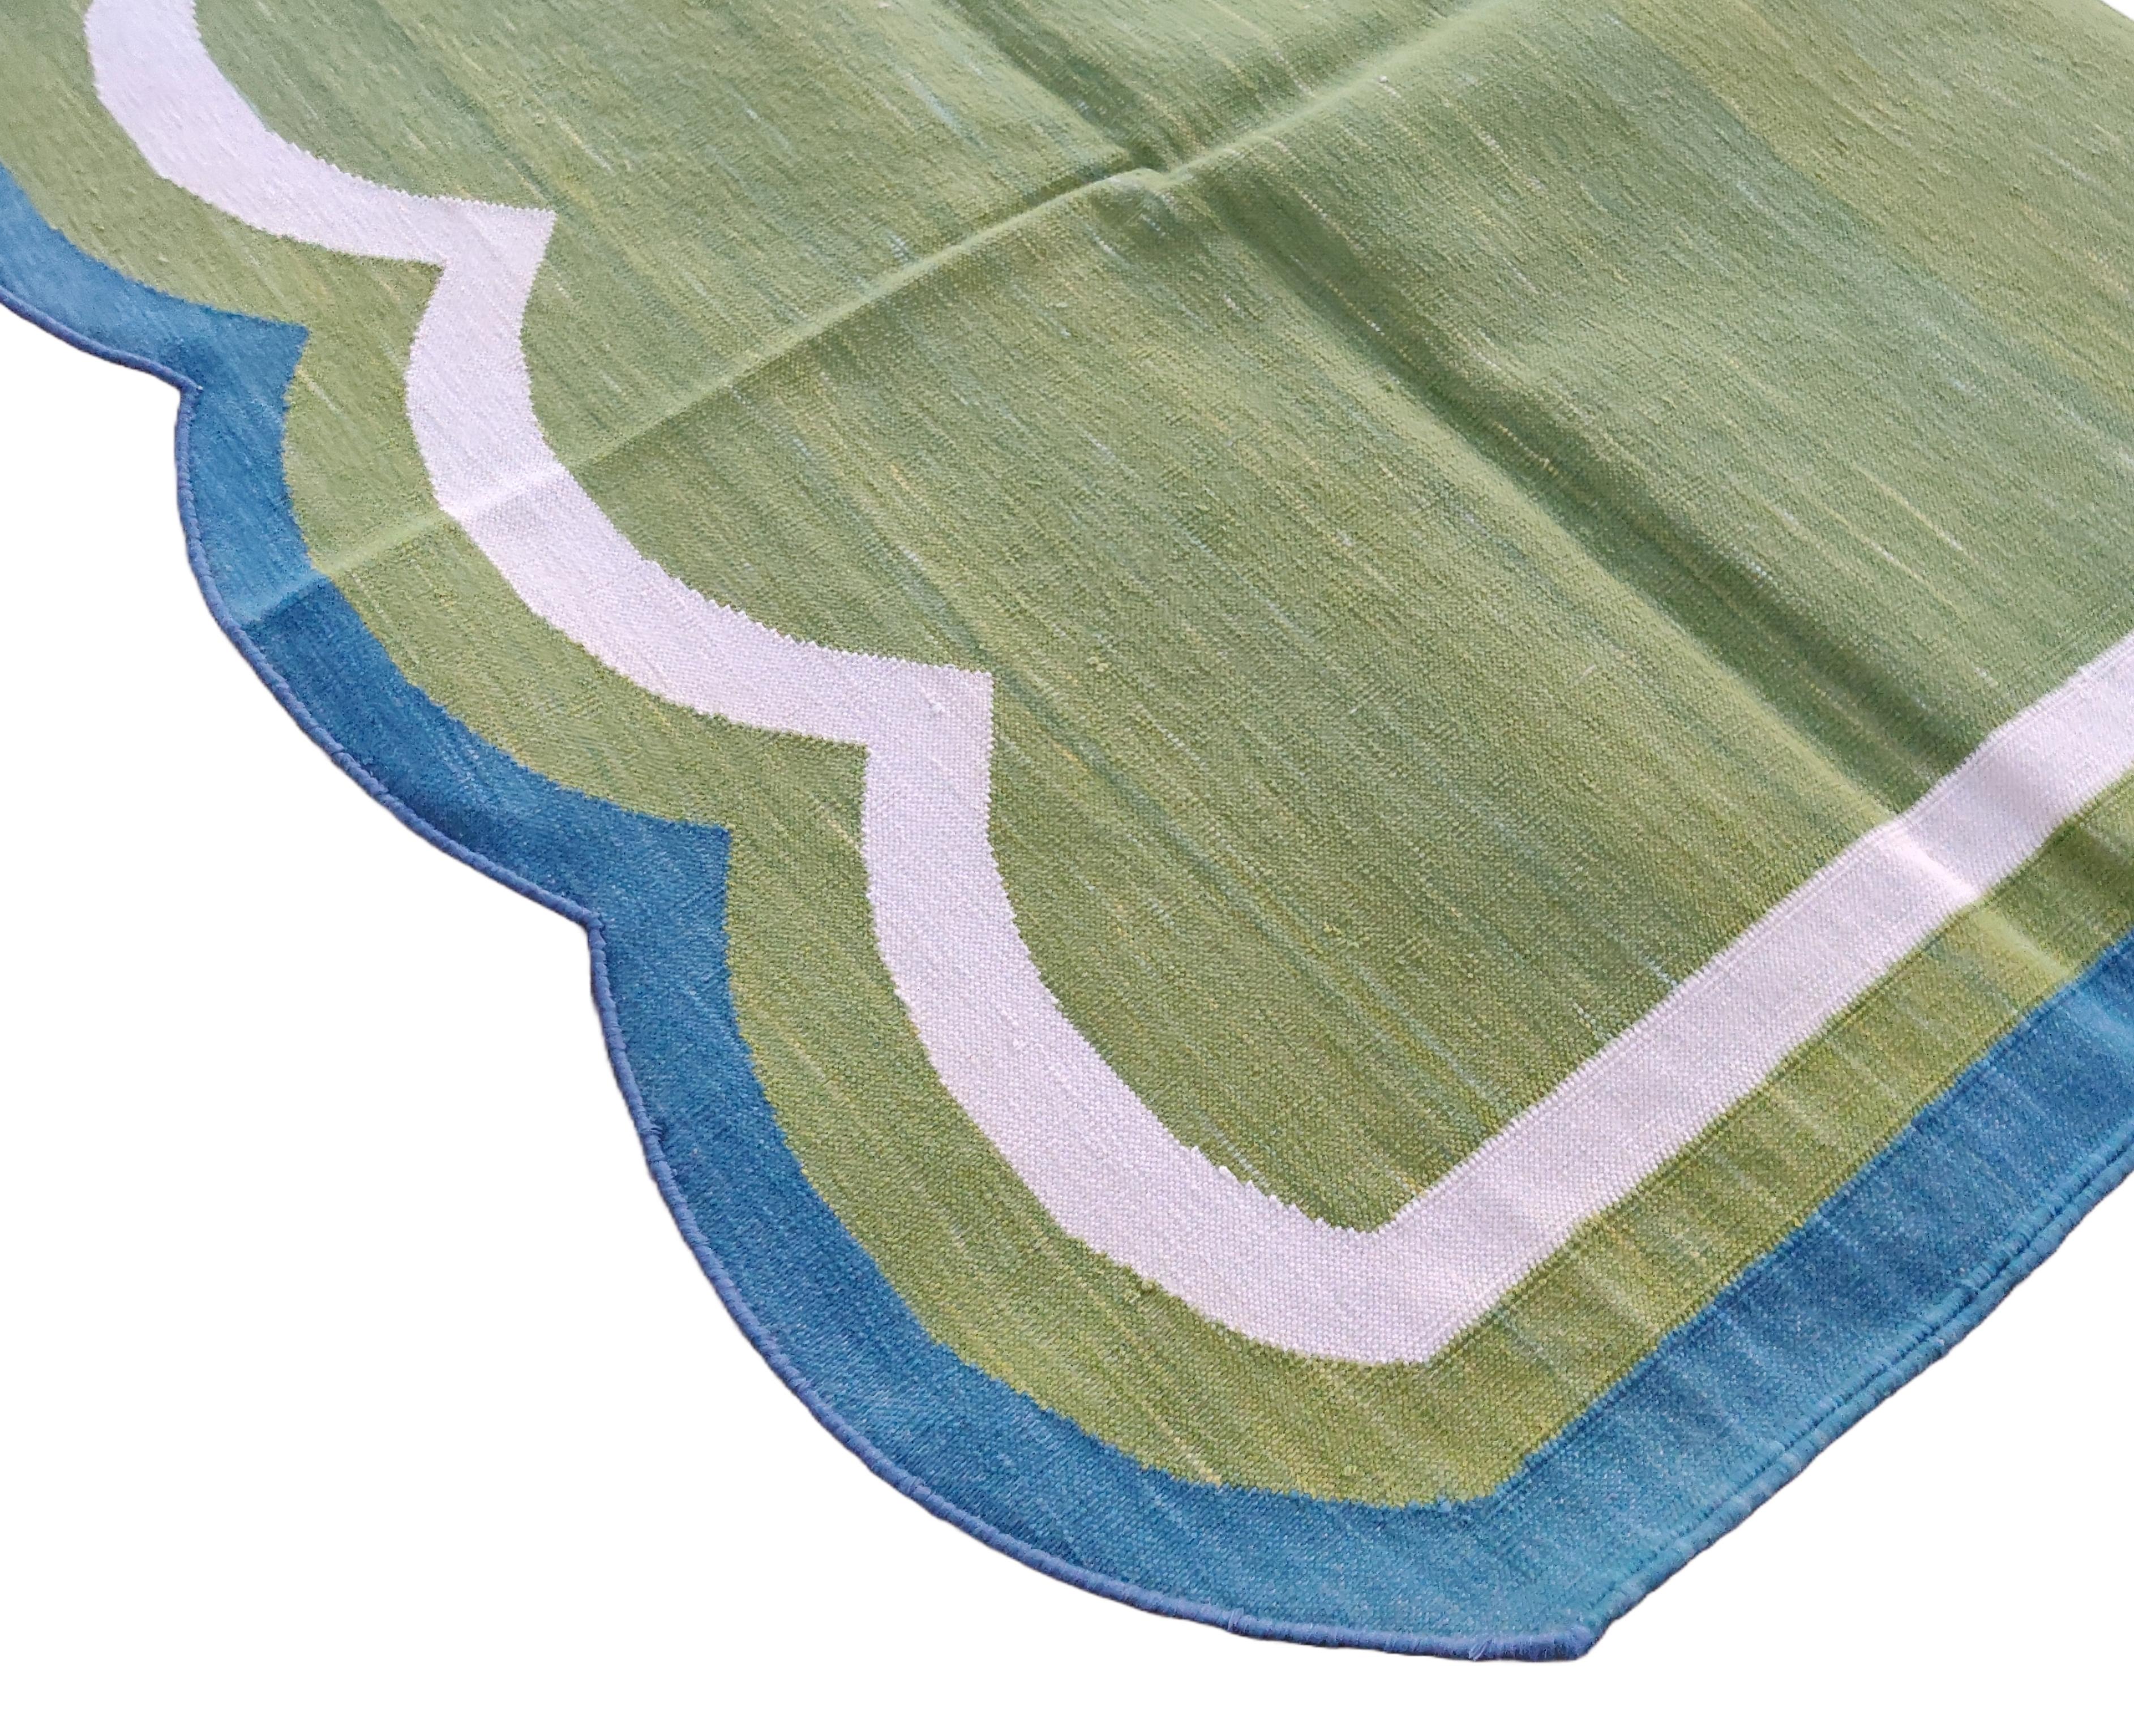 Baumwolle pflanzlich gefärbt Moos grün und blau mit Wellenschliff gestreiften indischen Dhurrie Teppich-5'x7' 
Diese speziellen flachgewebten Dhurries werden aus 15-fachem Garn aus 100% Baumwolle handgewebt. Aufgrund der speziellen